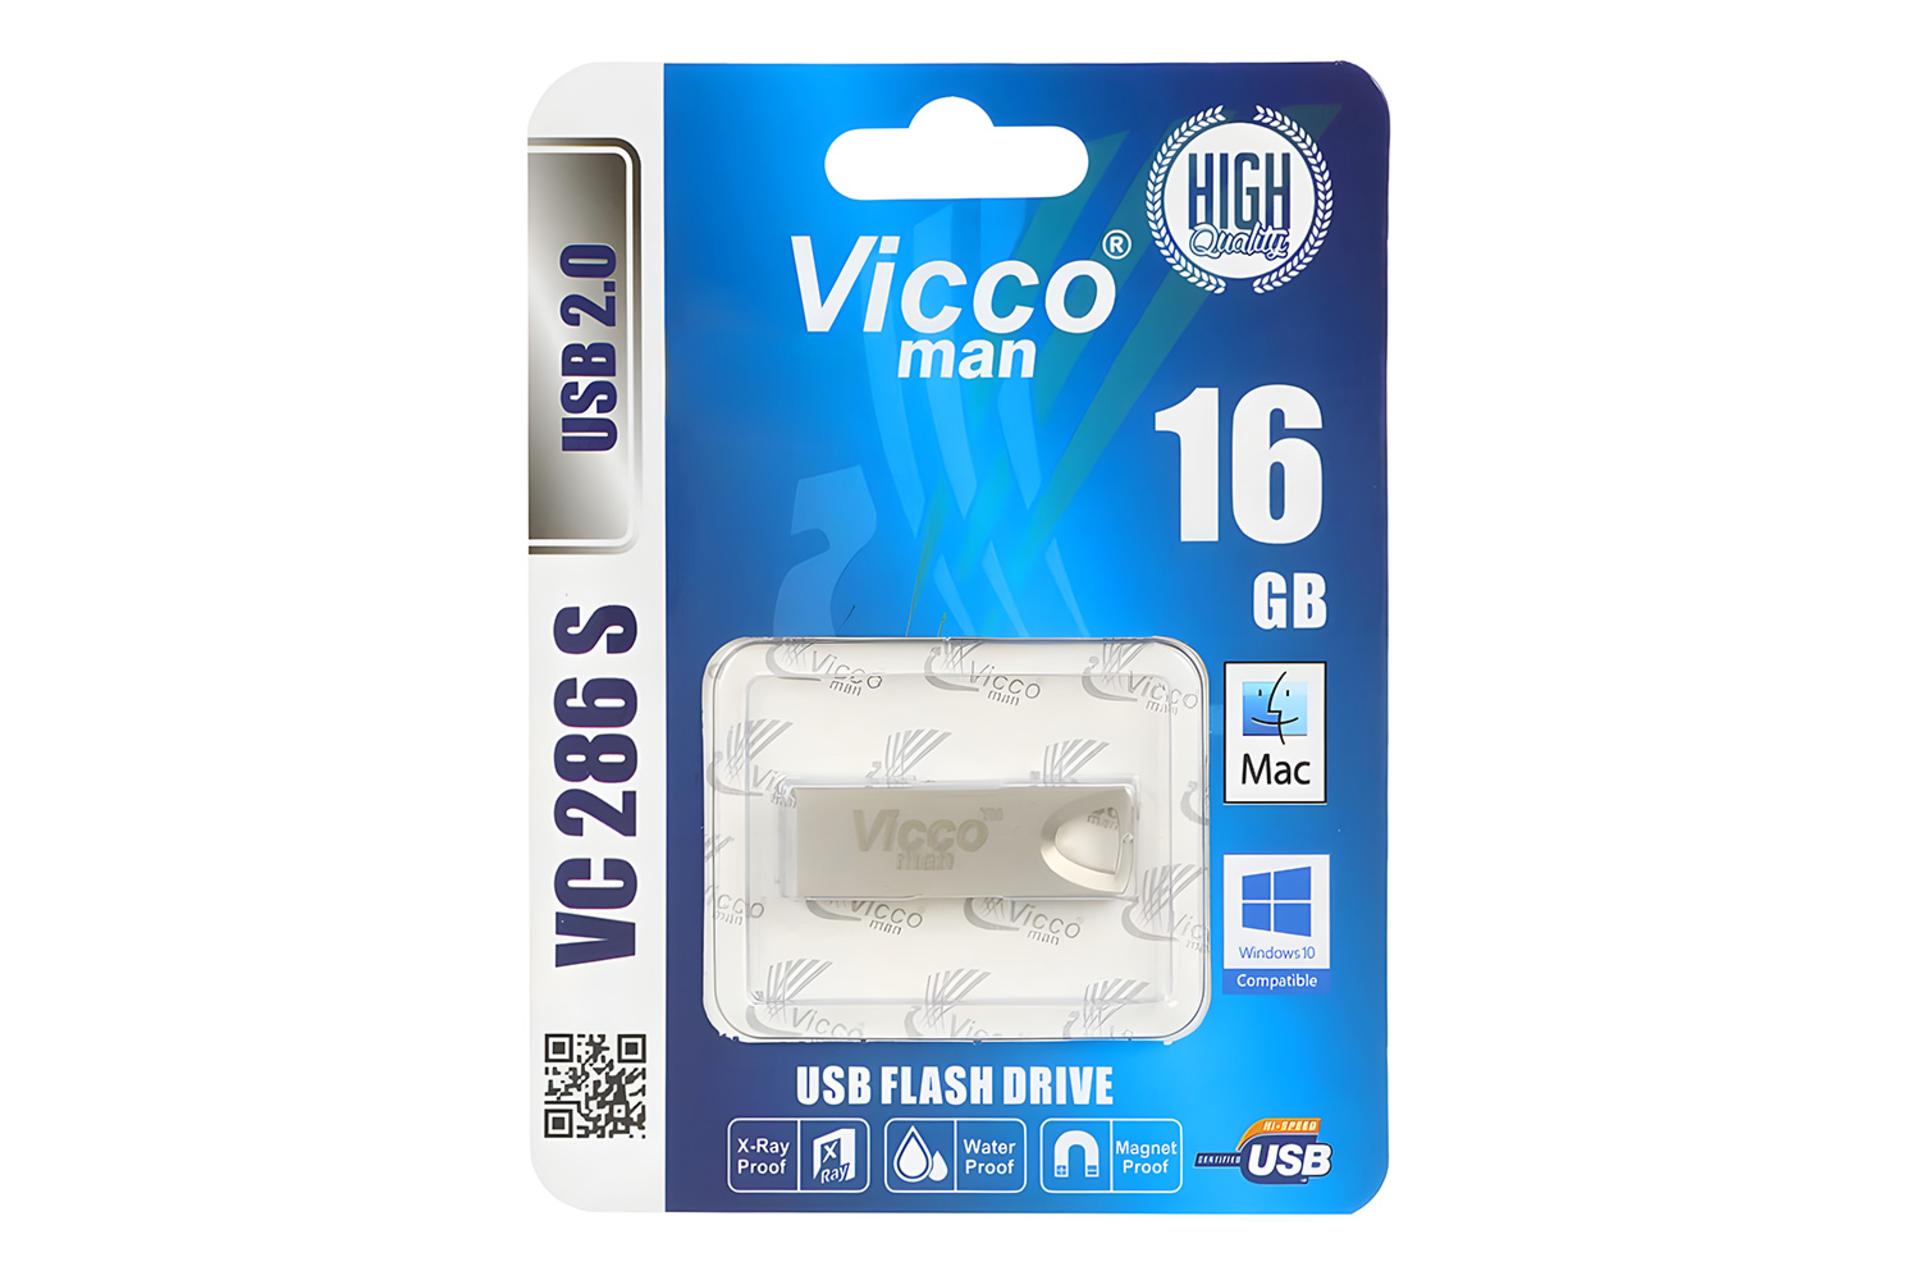 جعبه فلش مموری ویکومن Viccoman VC286 S 16GB USB 2.0